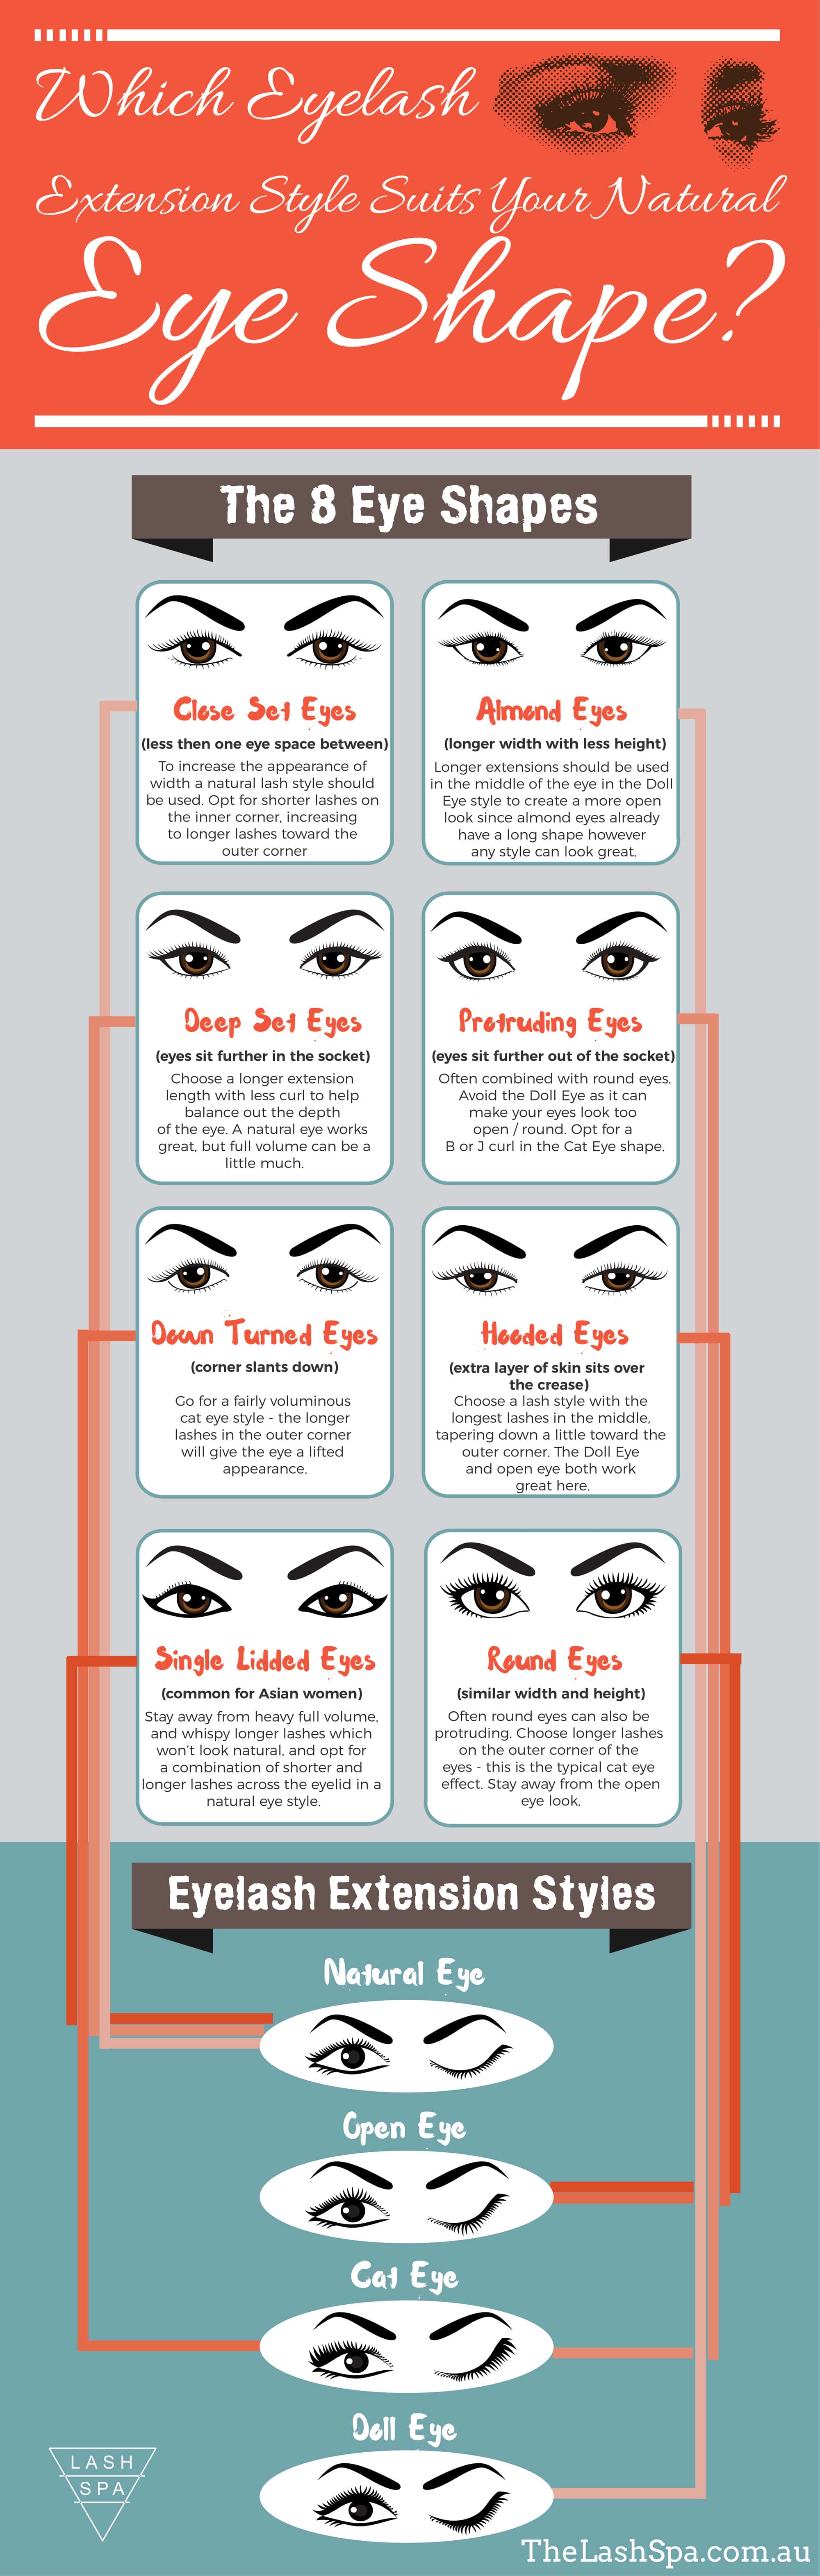 Eyelash Style Infographic